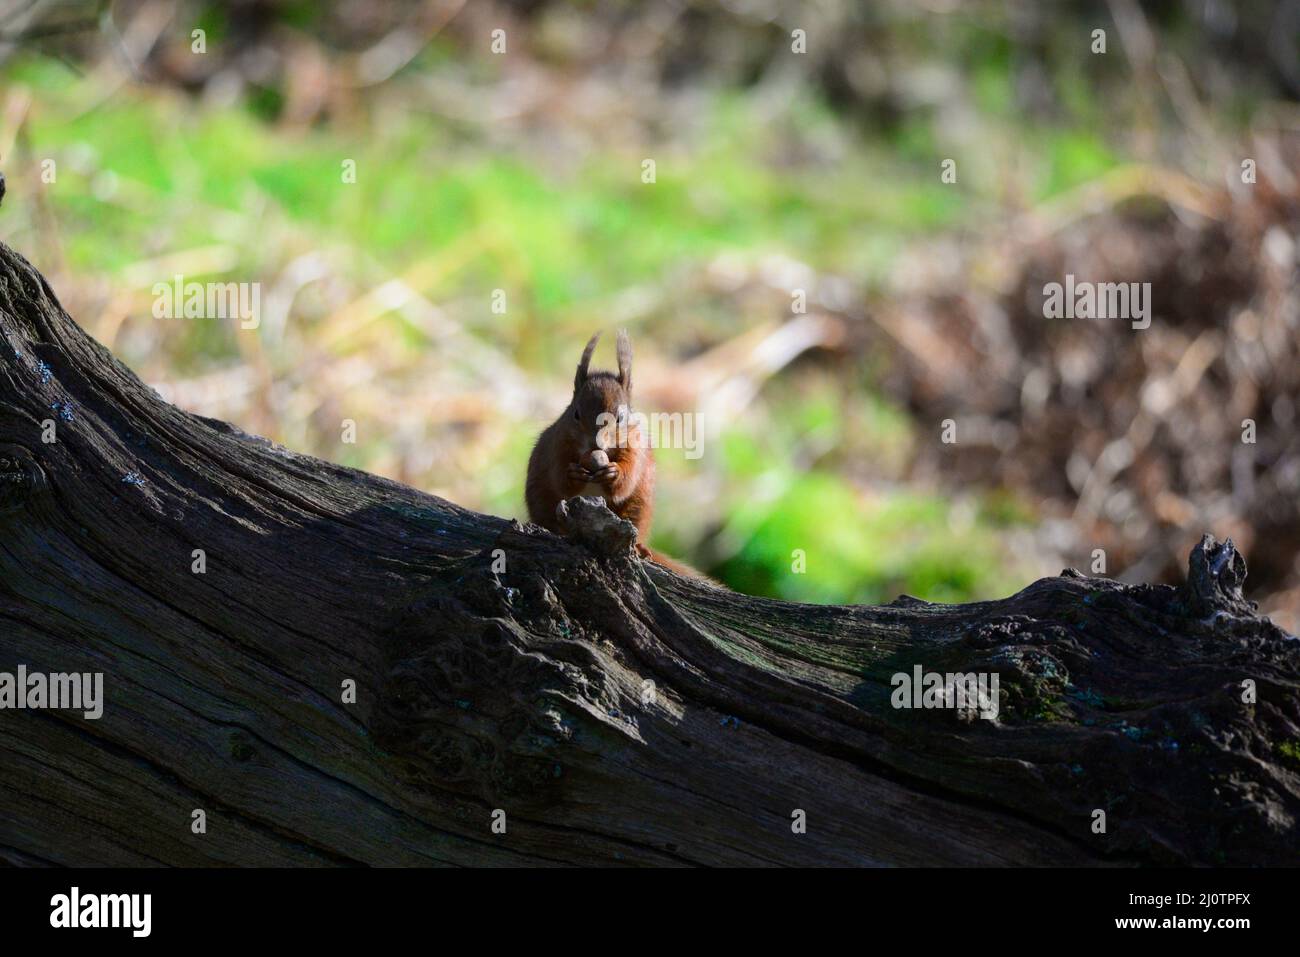 red squirrel or Sciurus vulgaris Stock Photo